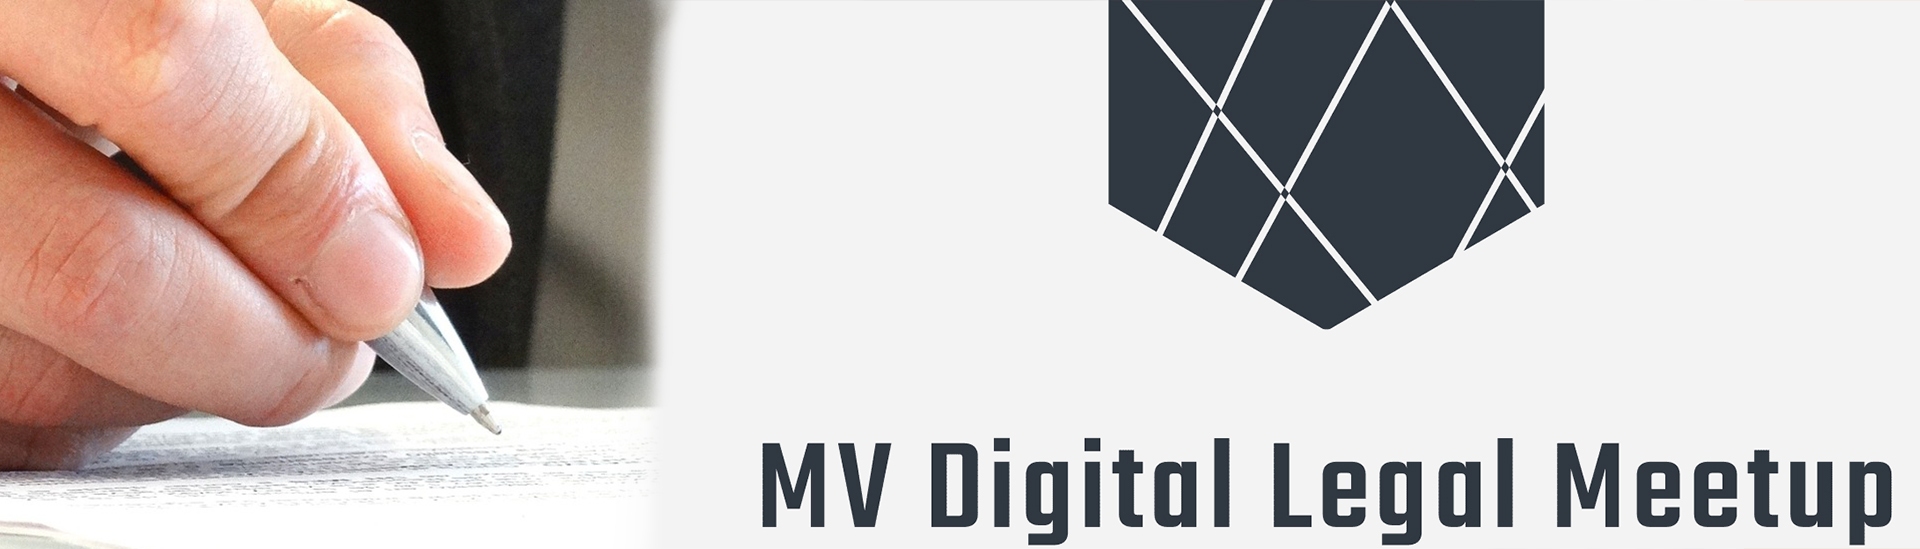 MV Digital Legal Meetup